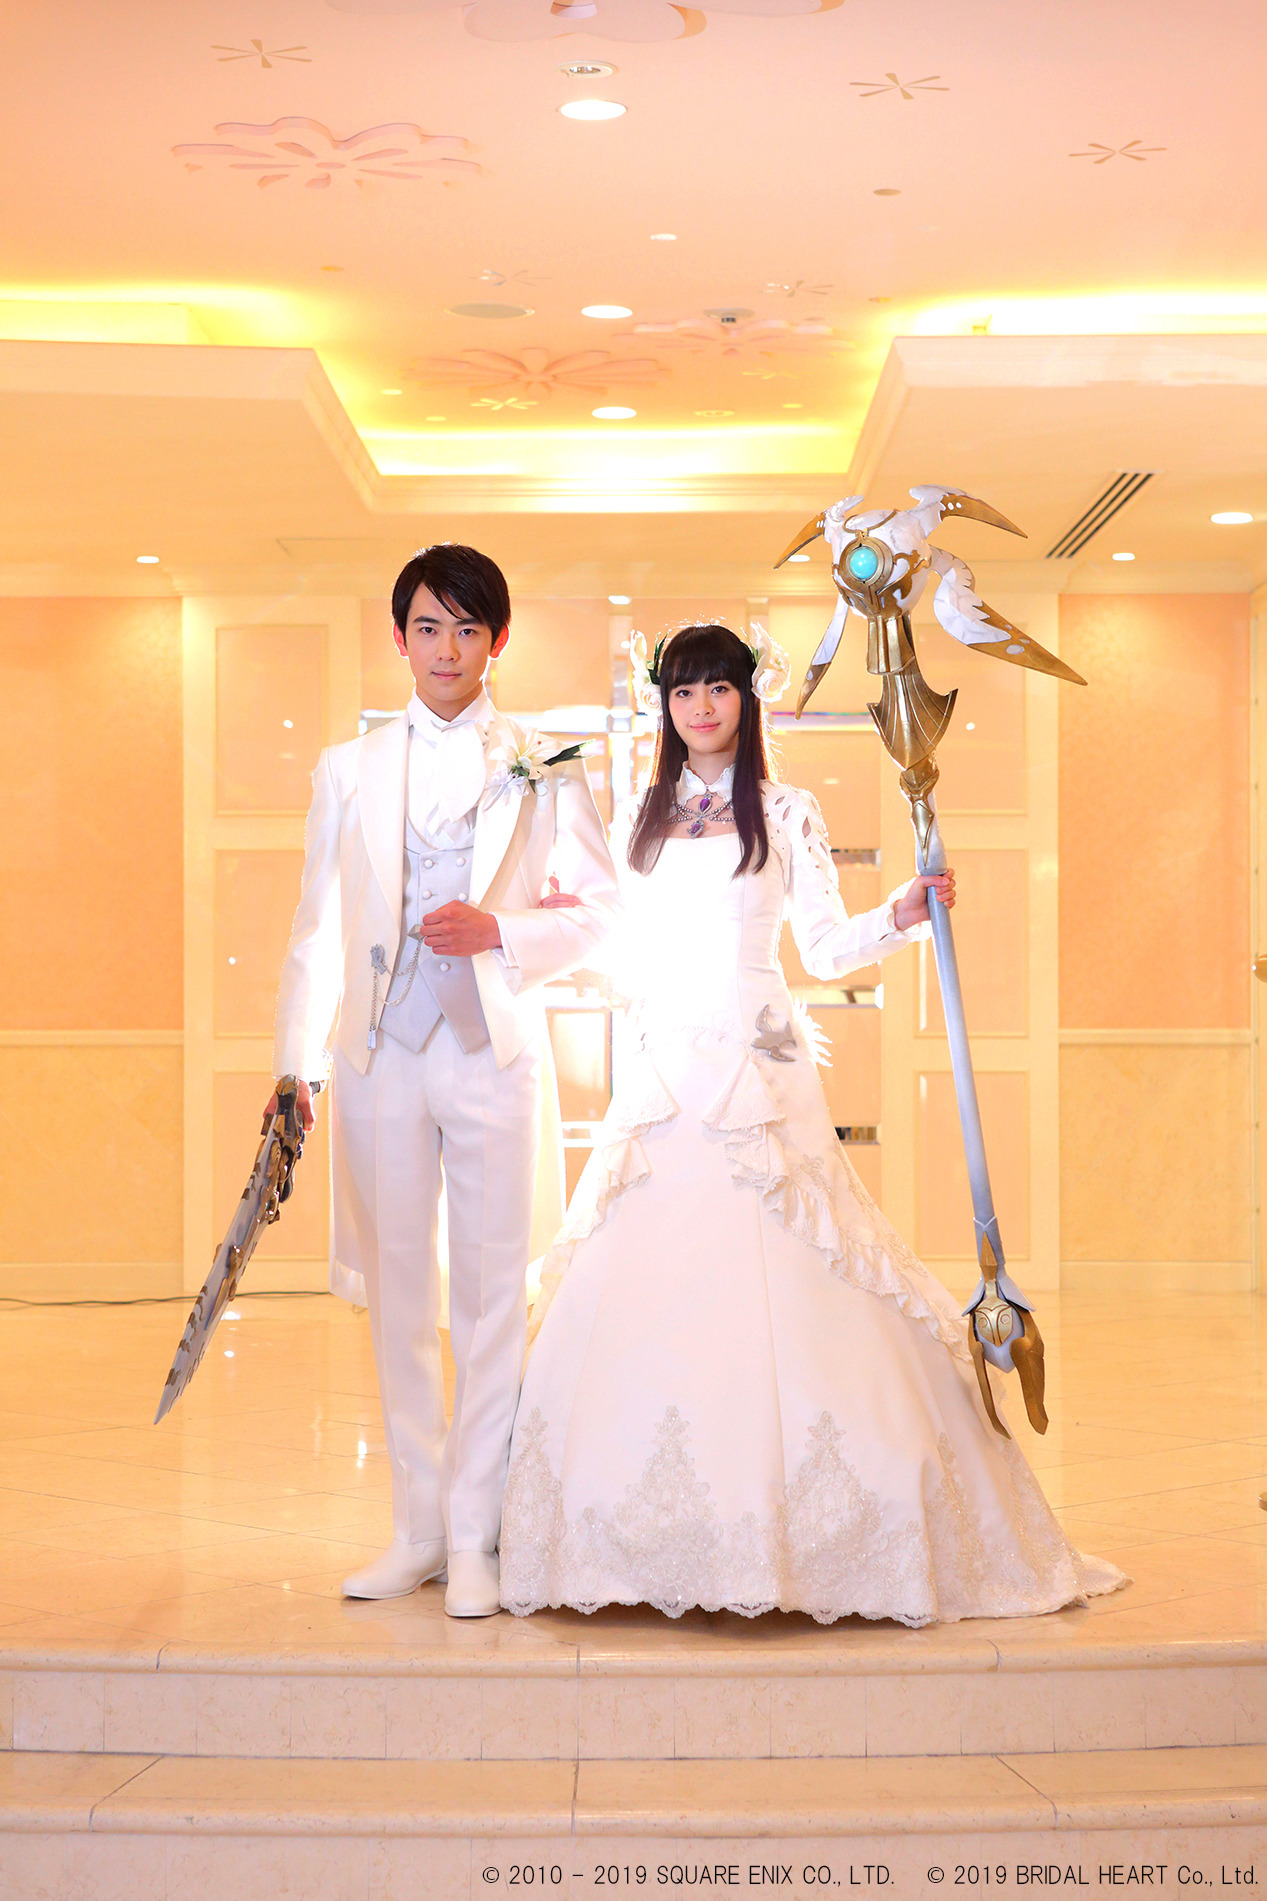 《太空戰士14》主題婚禮展示 新人手持魔杖大劍好酷